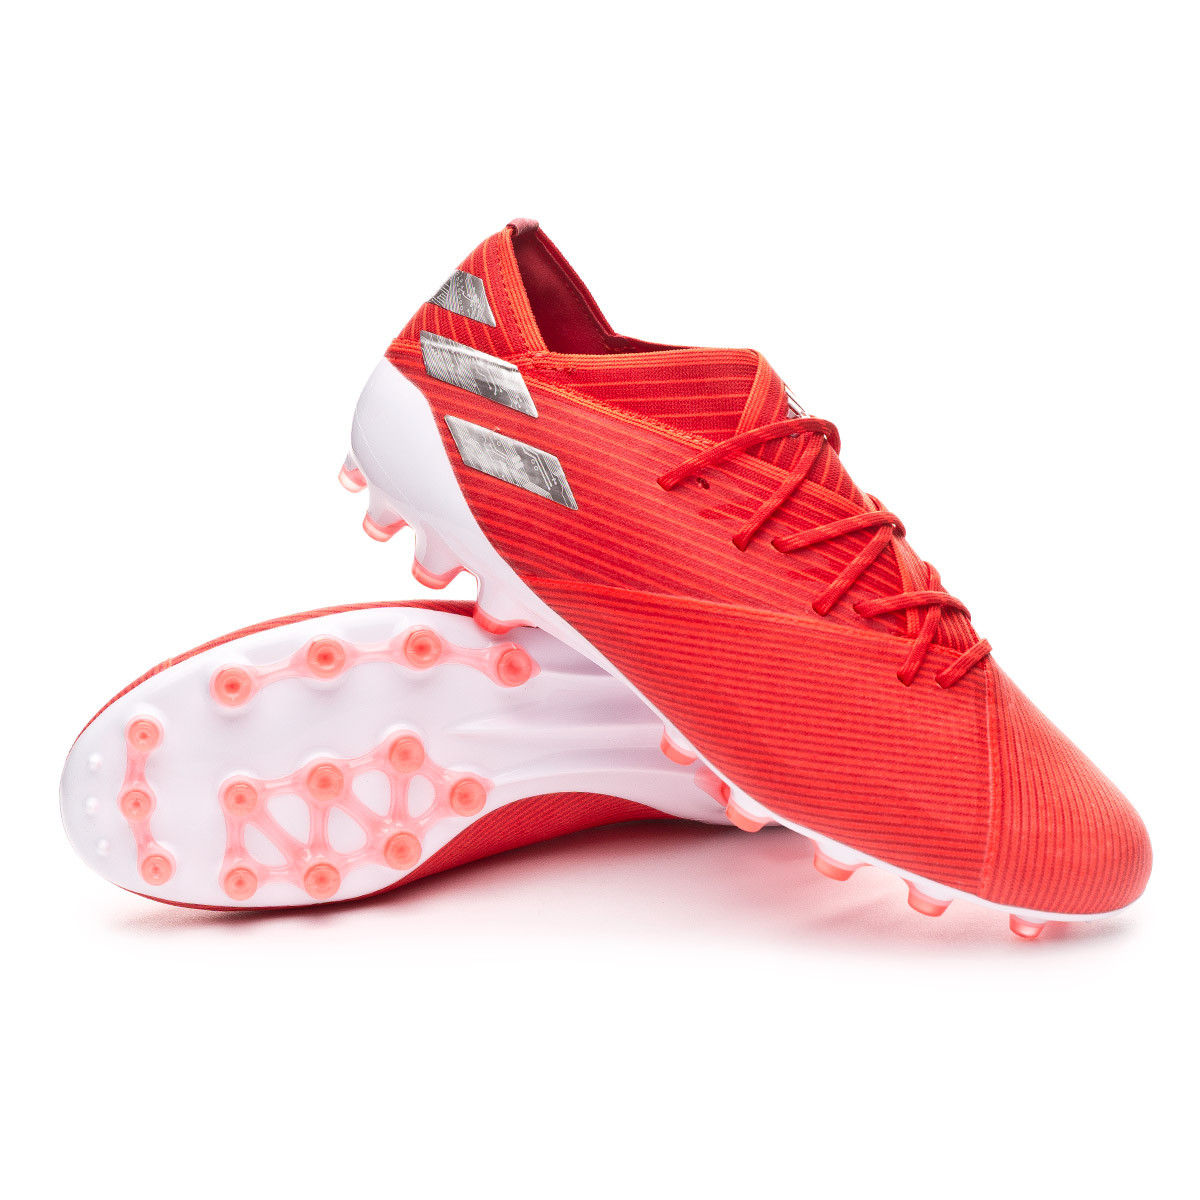 Football Boots adidas Nemeziz 19.1 AG 